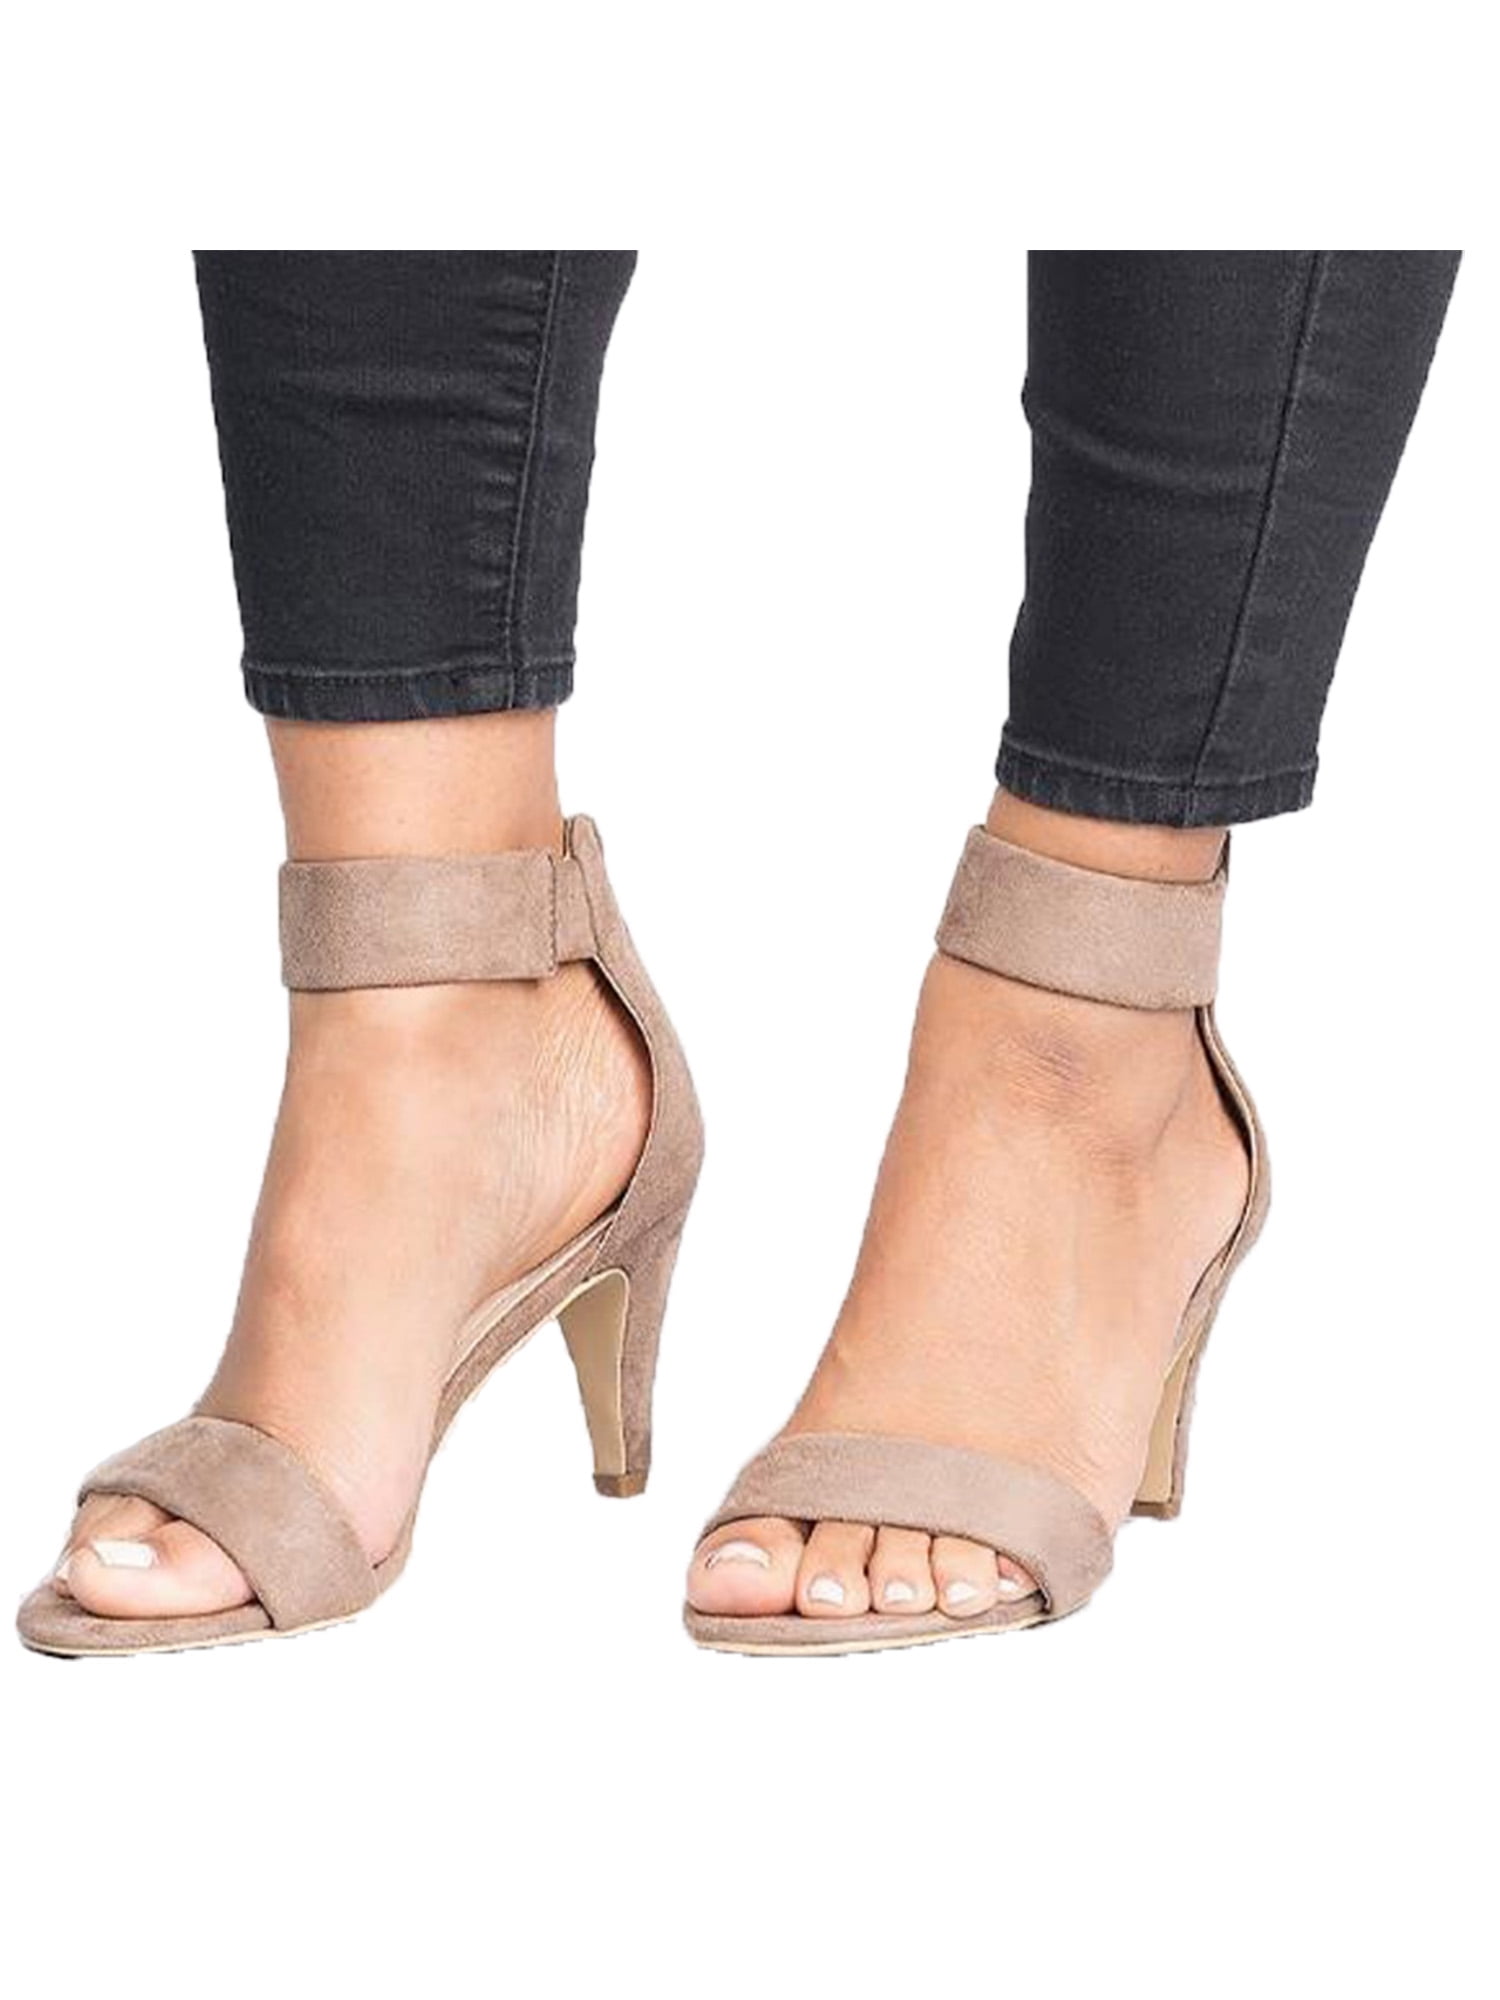 Fashion Women's Platform Pumps Ankle Strap Sandals High Heels Slingback Shoes Sz 